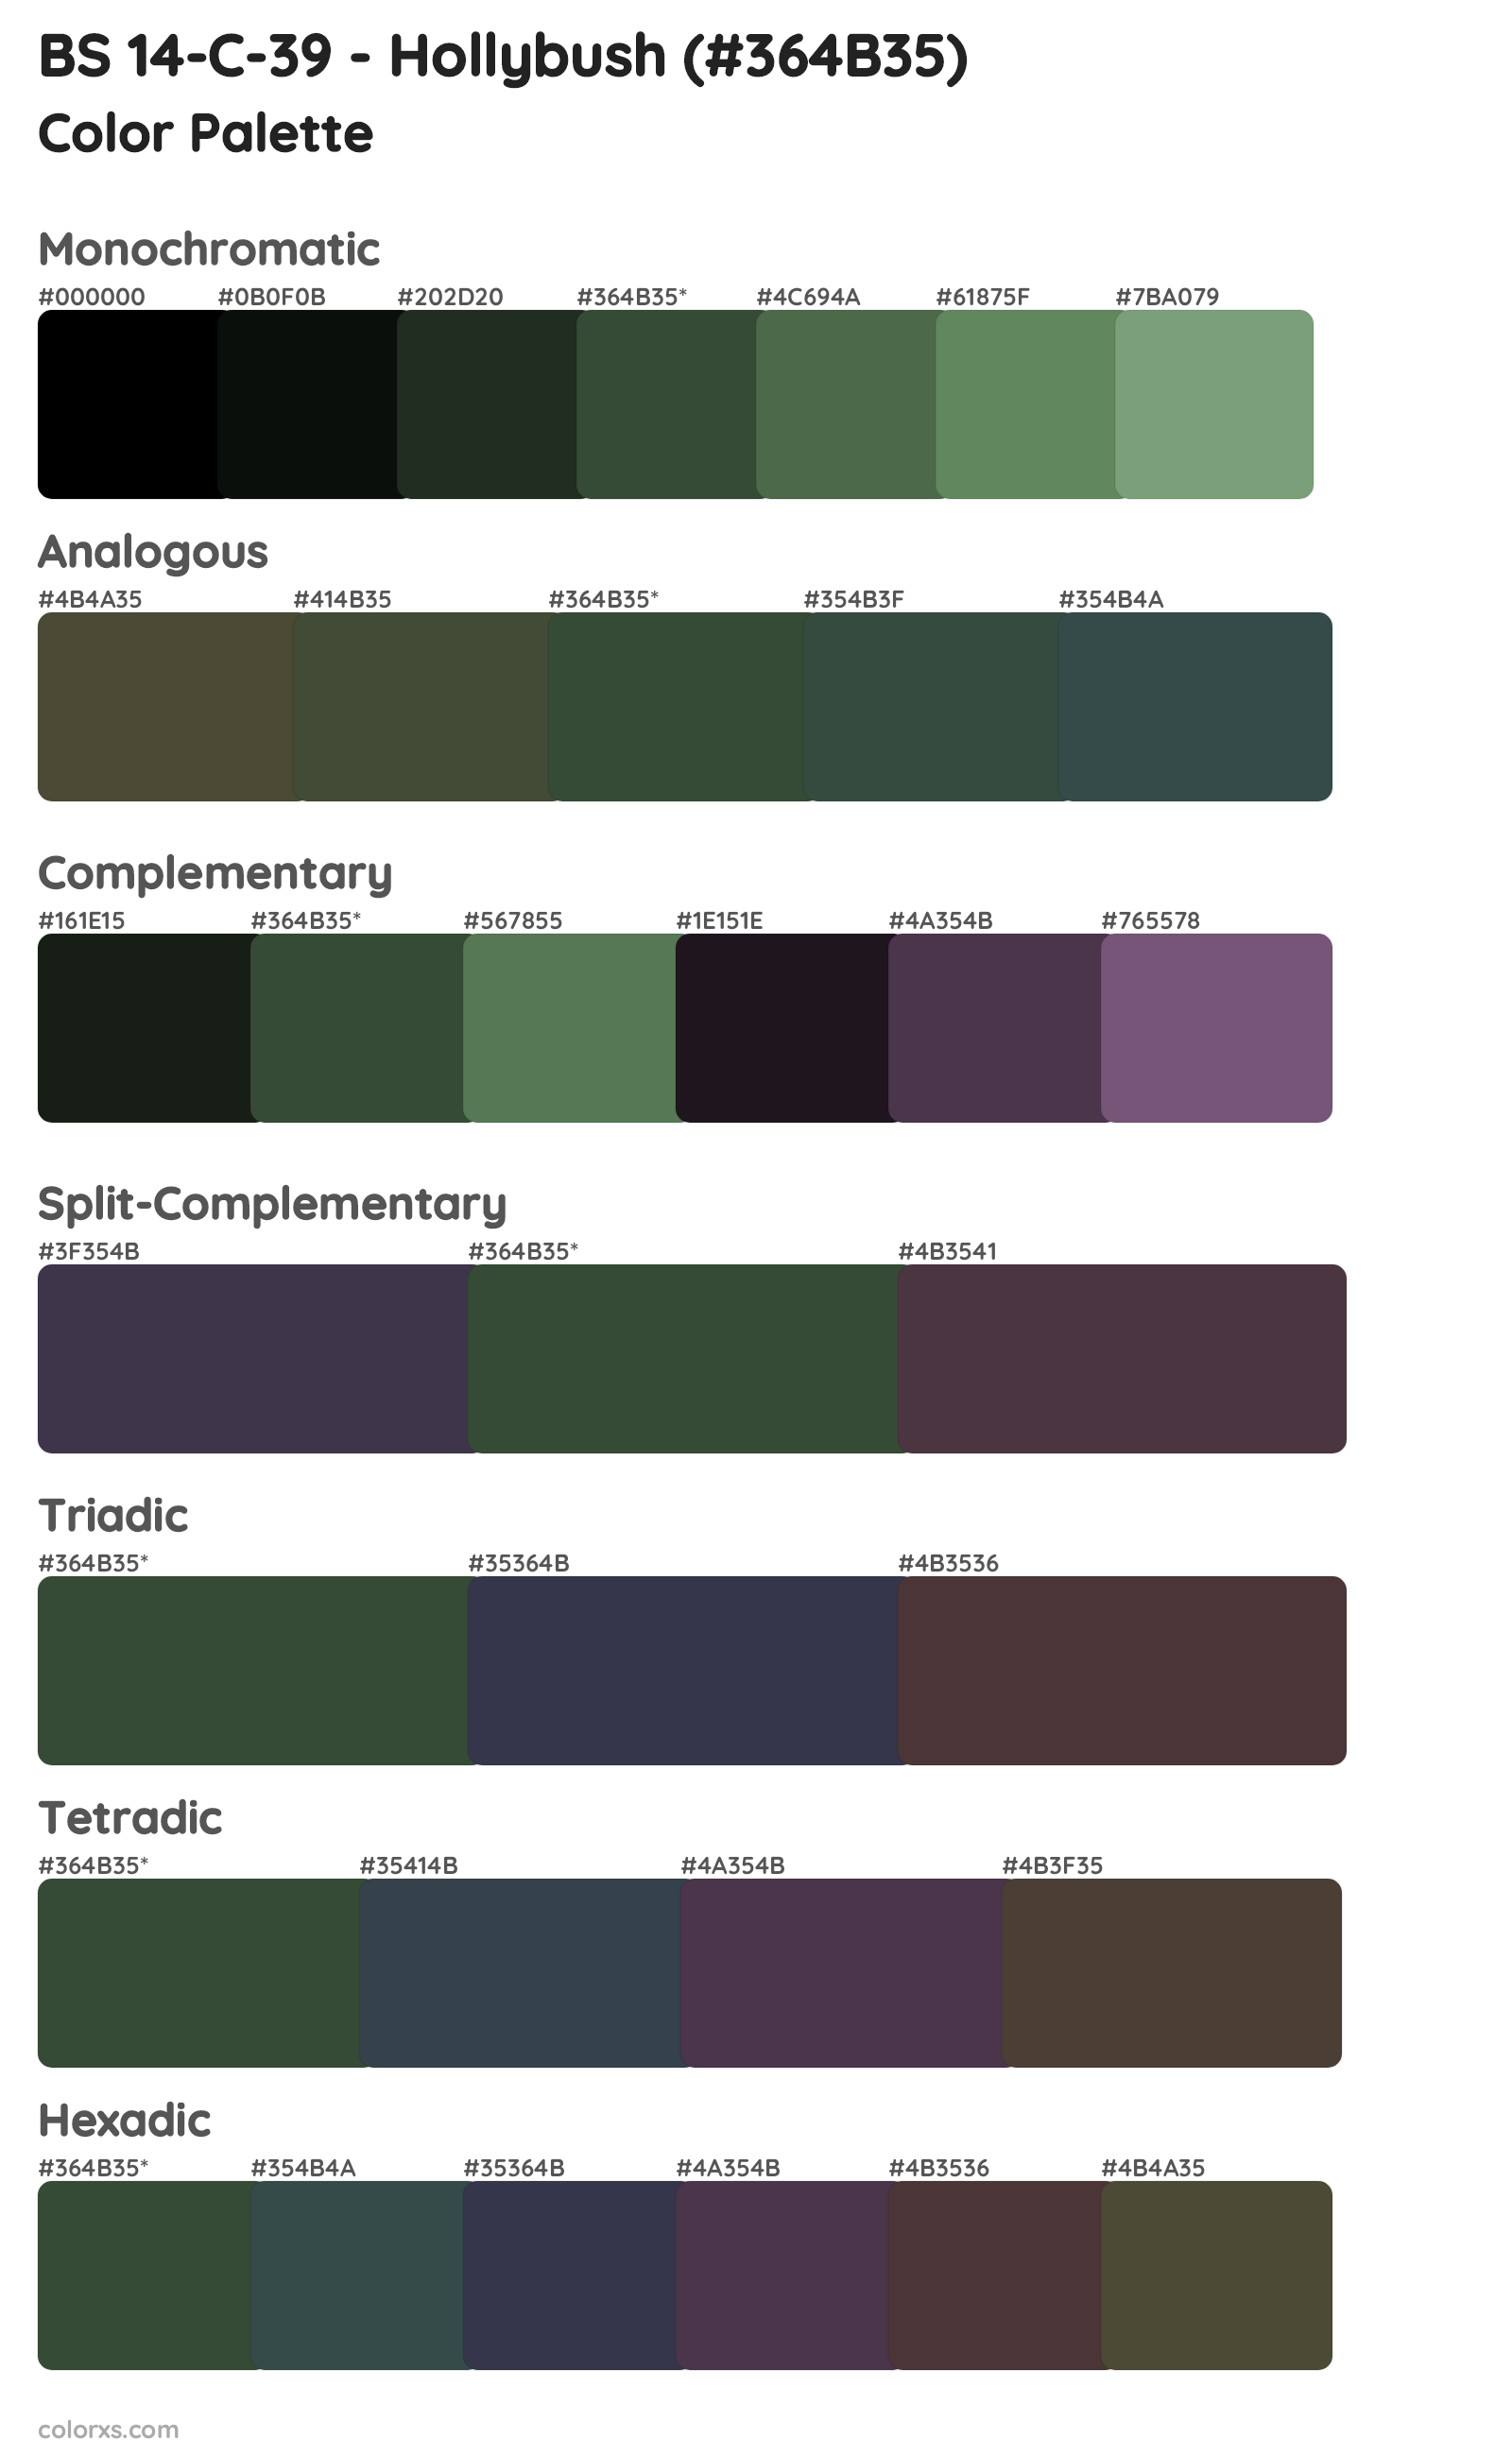 BS 14-C-39 - Hollybush Color Scheme Palettes